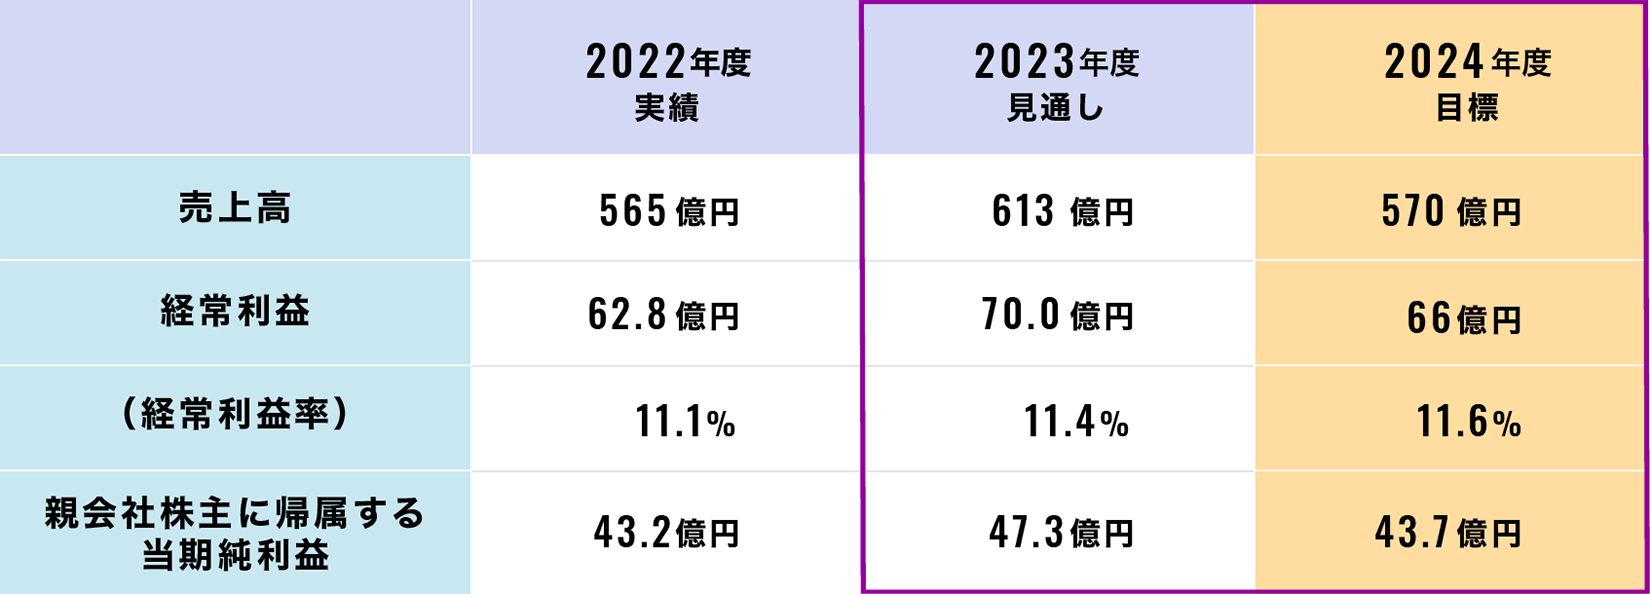 中期経営計画（2022-2024年度）業績見通し（連結：2022年度実績・2023年度見込み比）